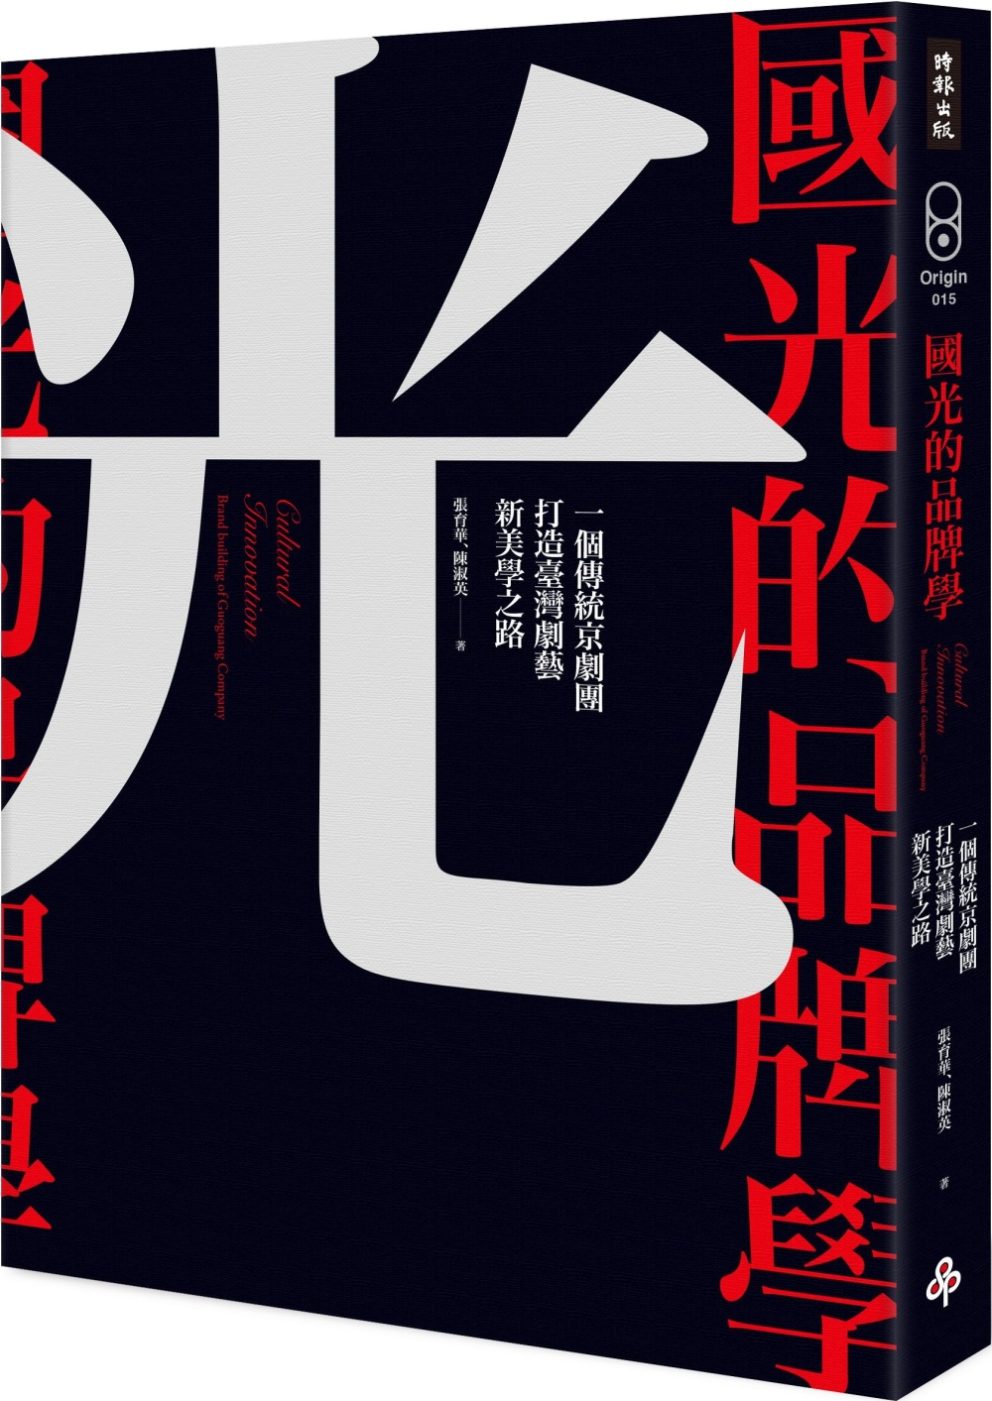 國光的品牌學：一個傳統京劇團打造臺灣劇藝新美學之路